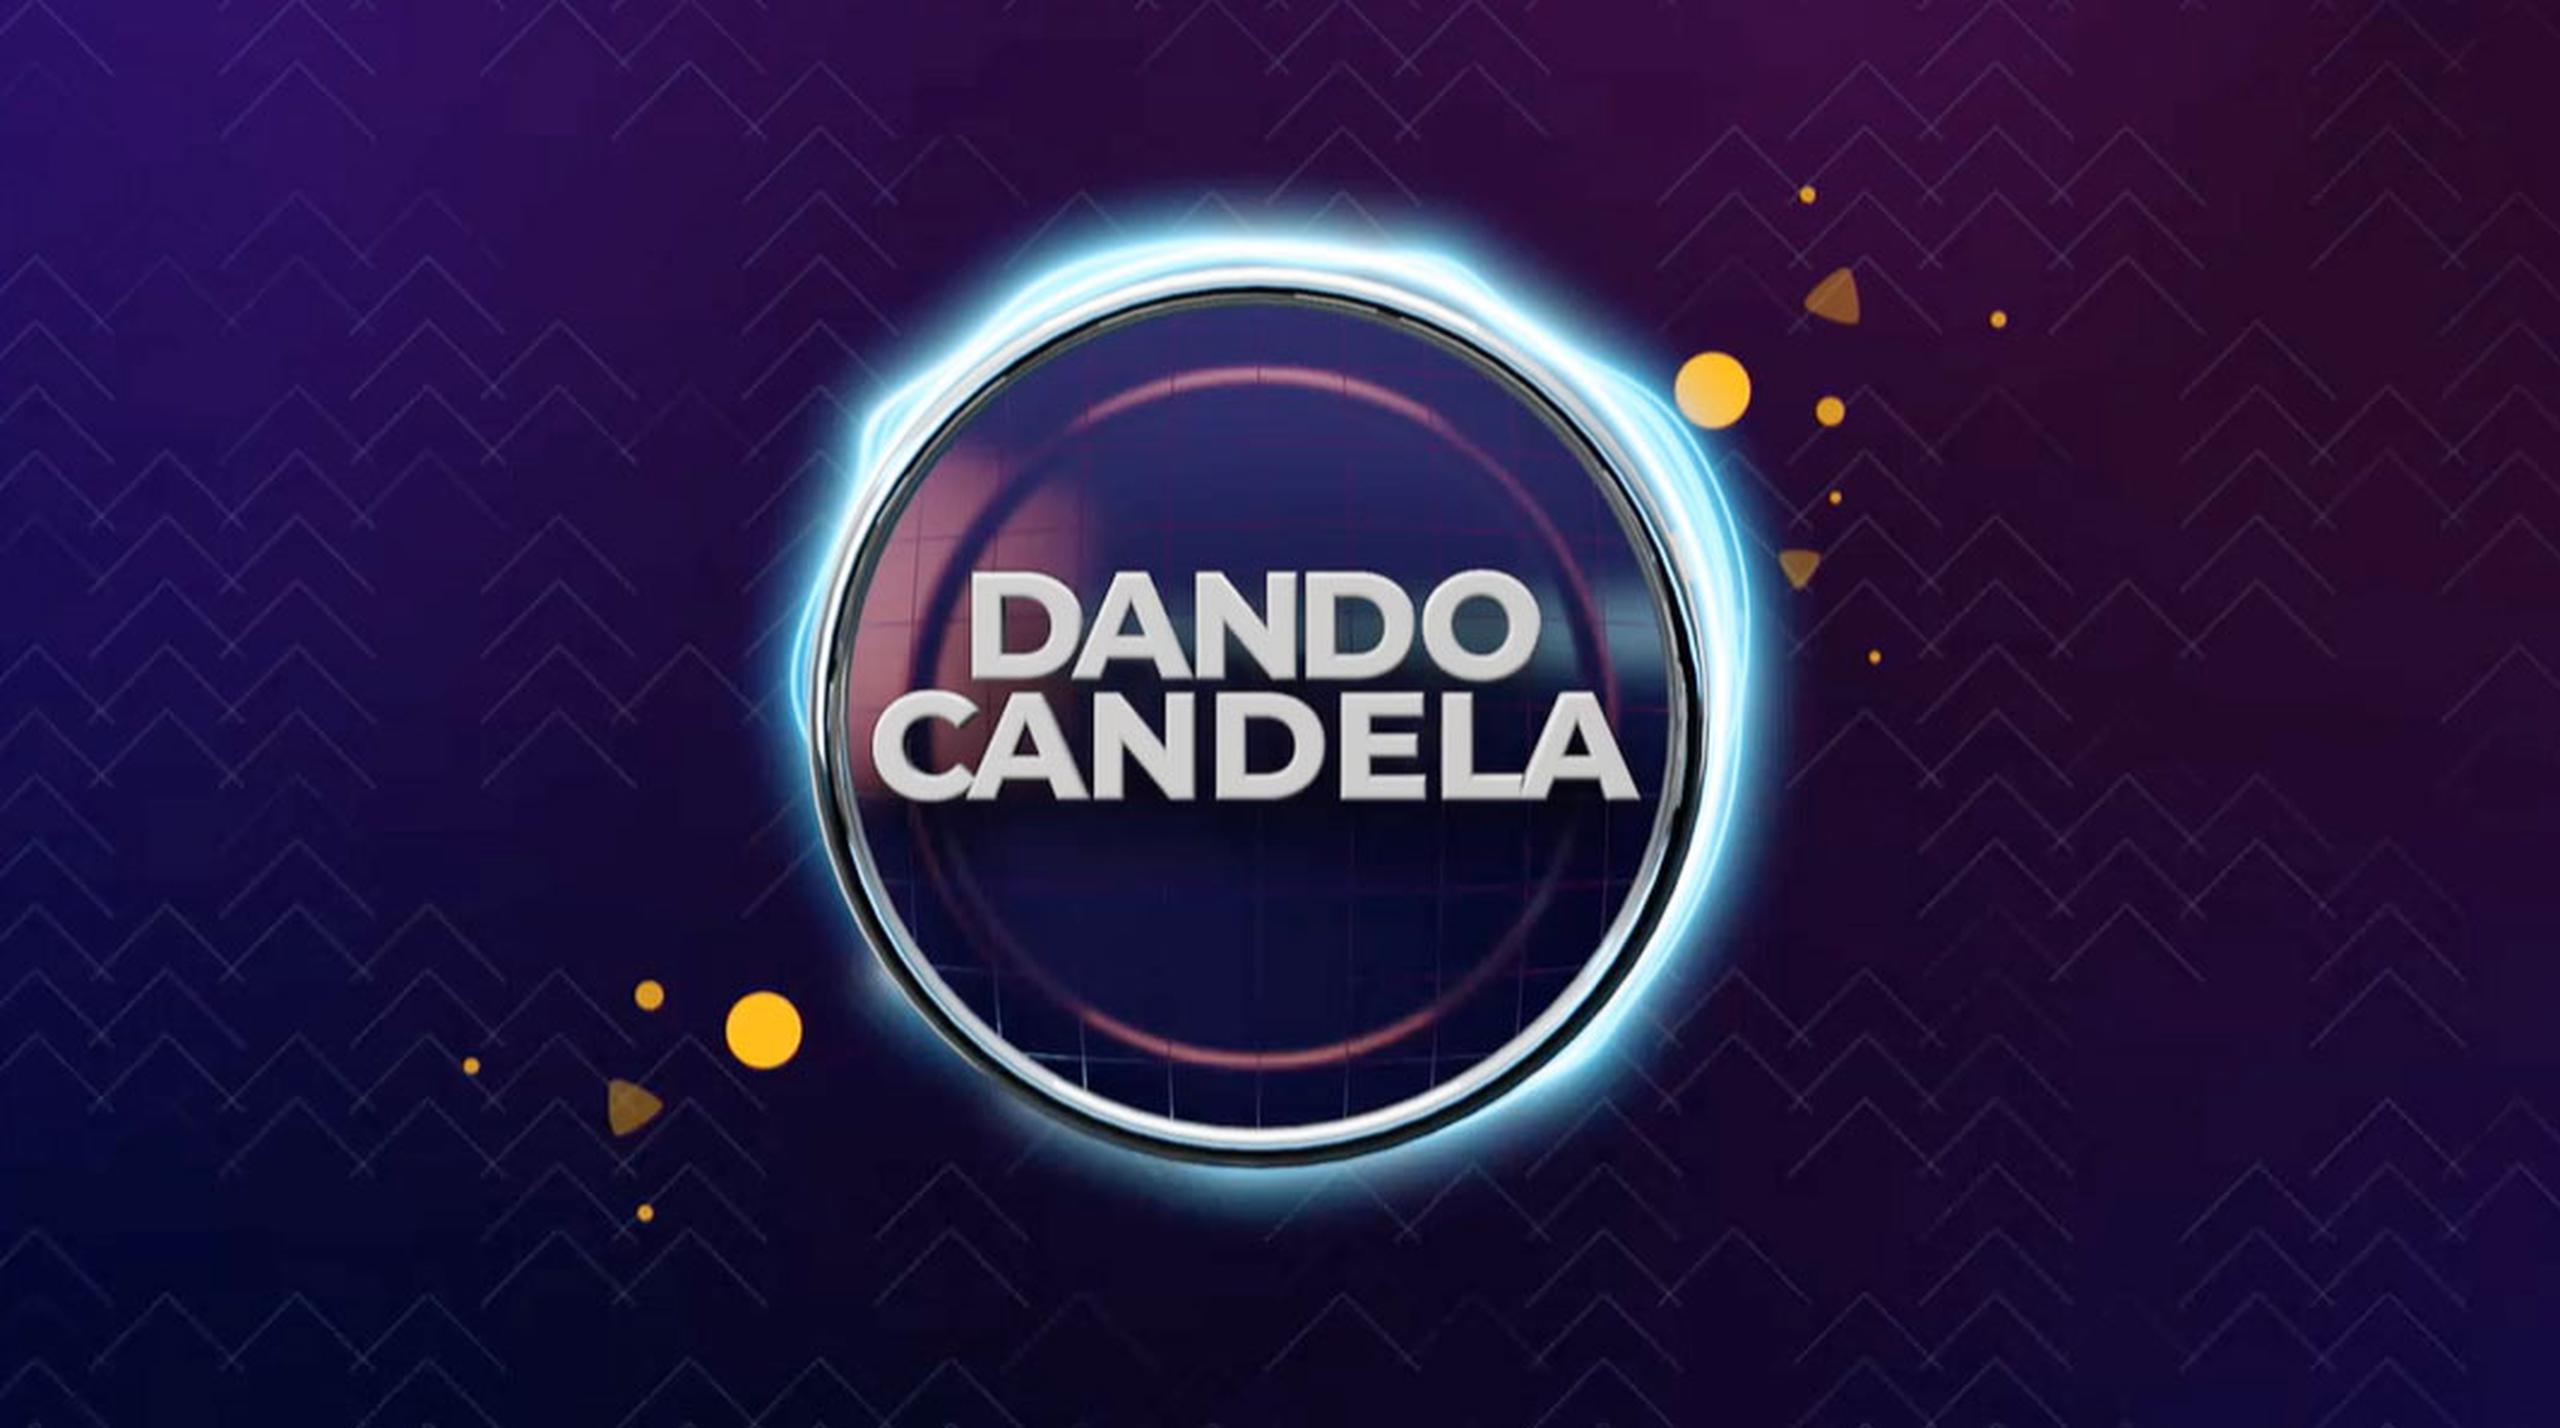 Nuevo logo de Dando candela